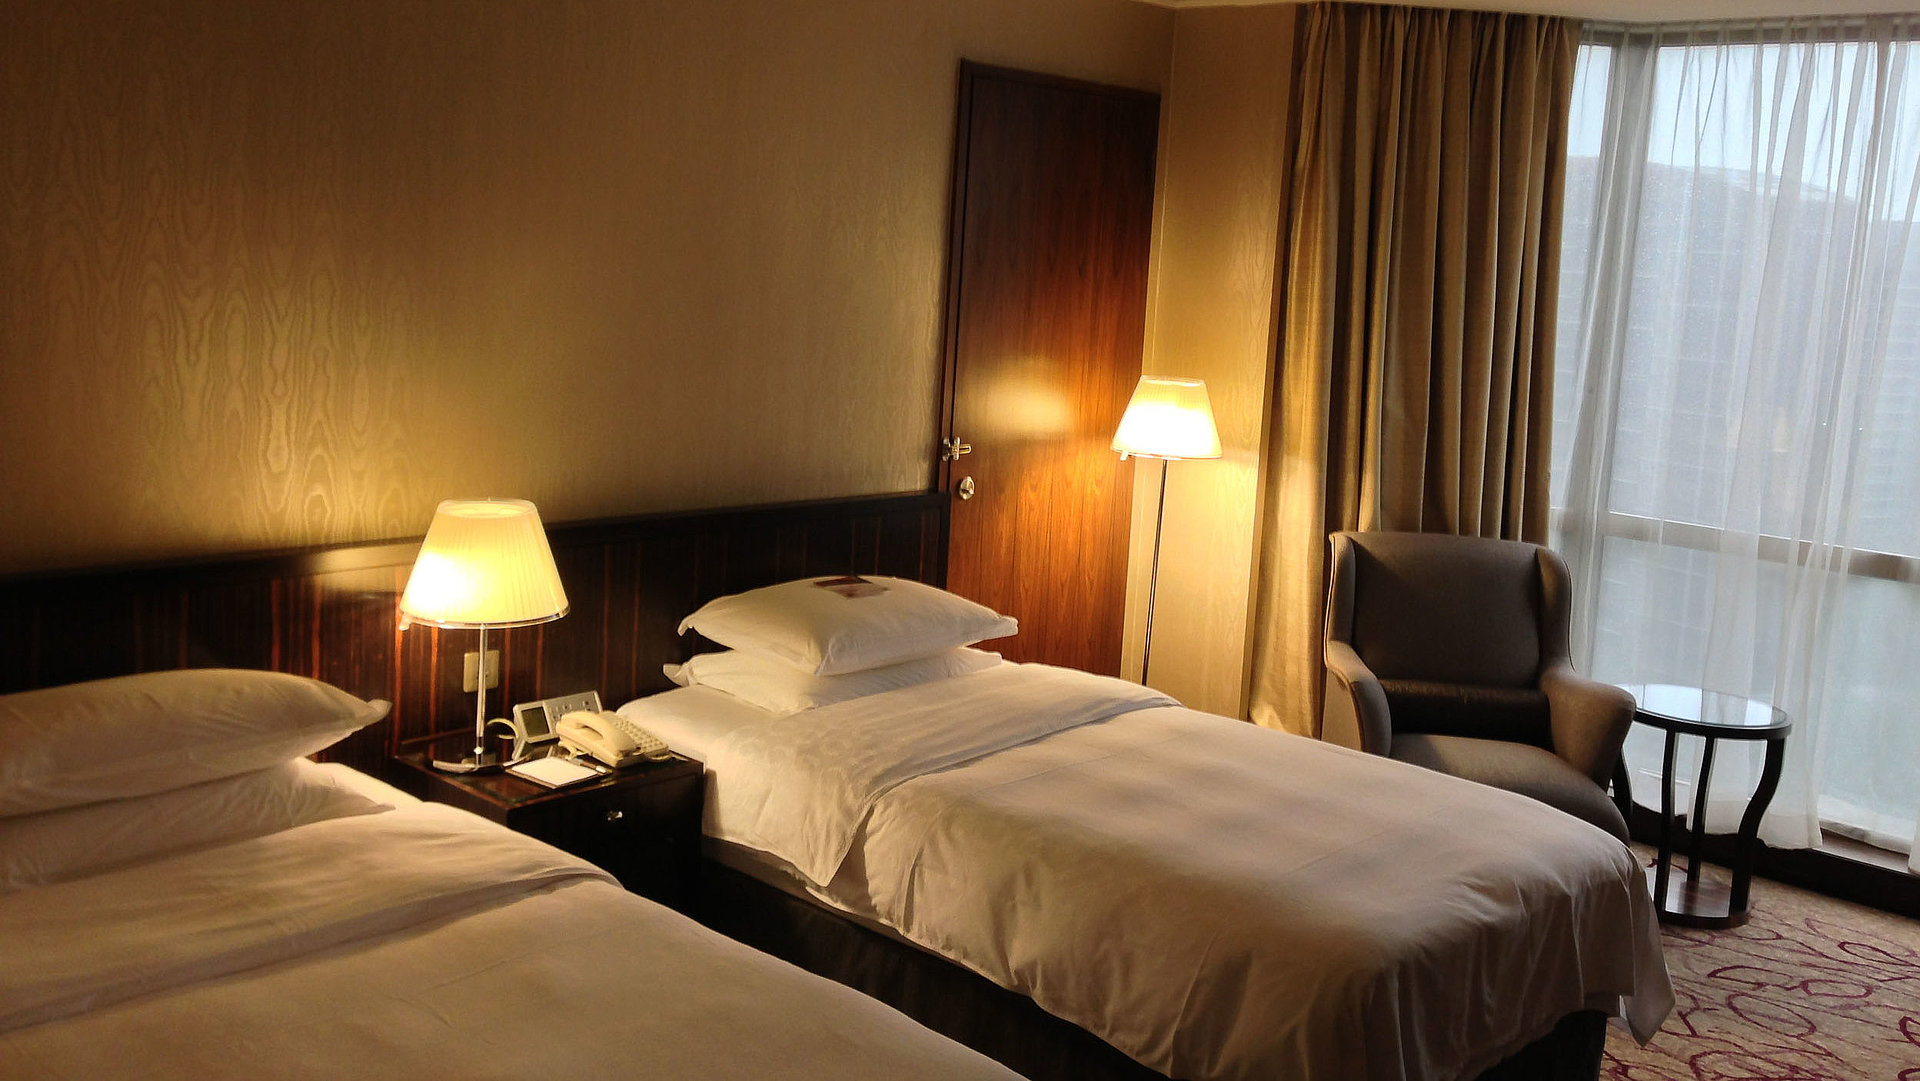 Ferienwohnungen für Gruppen - sehr ordentliches Hotelzimmer mit zwei Betten, warmer Nachtlampe und Gardinen